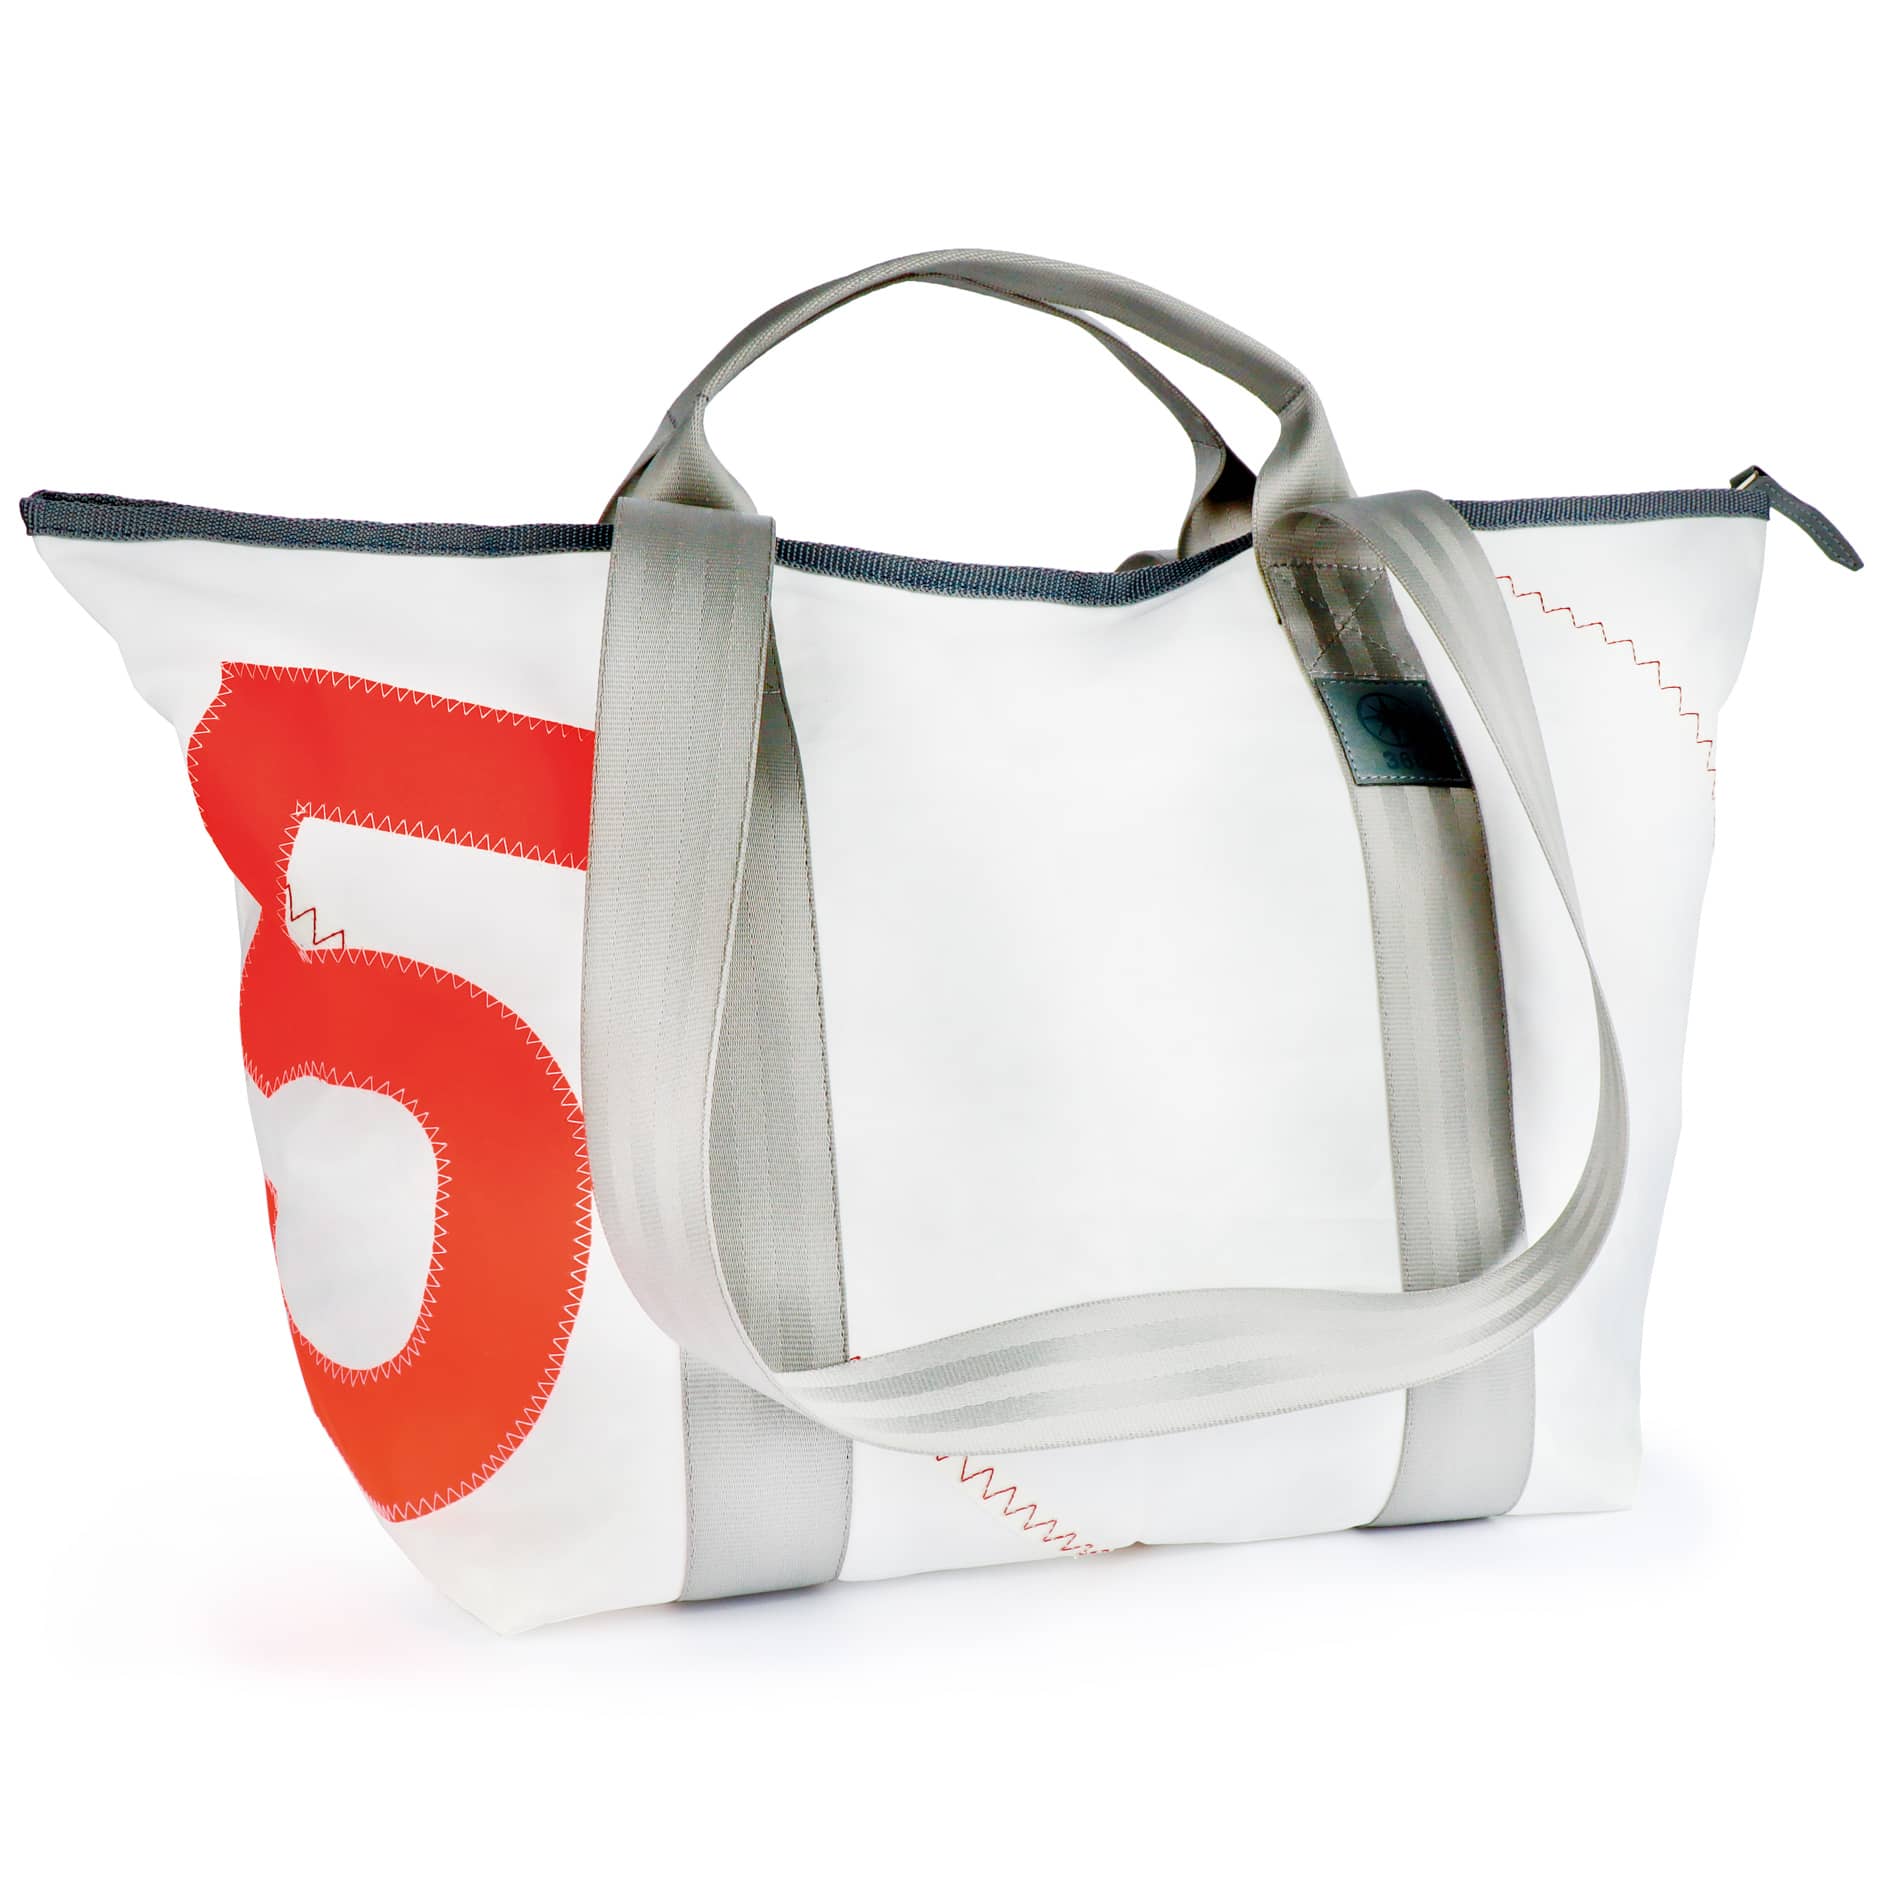 Schlepper mini beach bag made from sail canvas